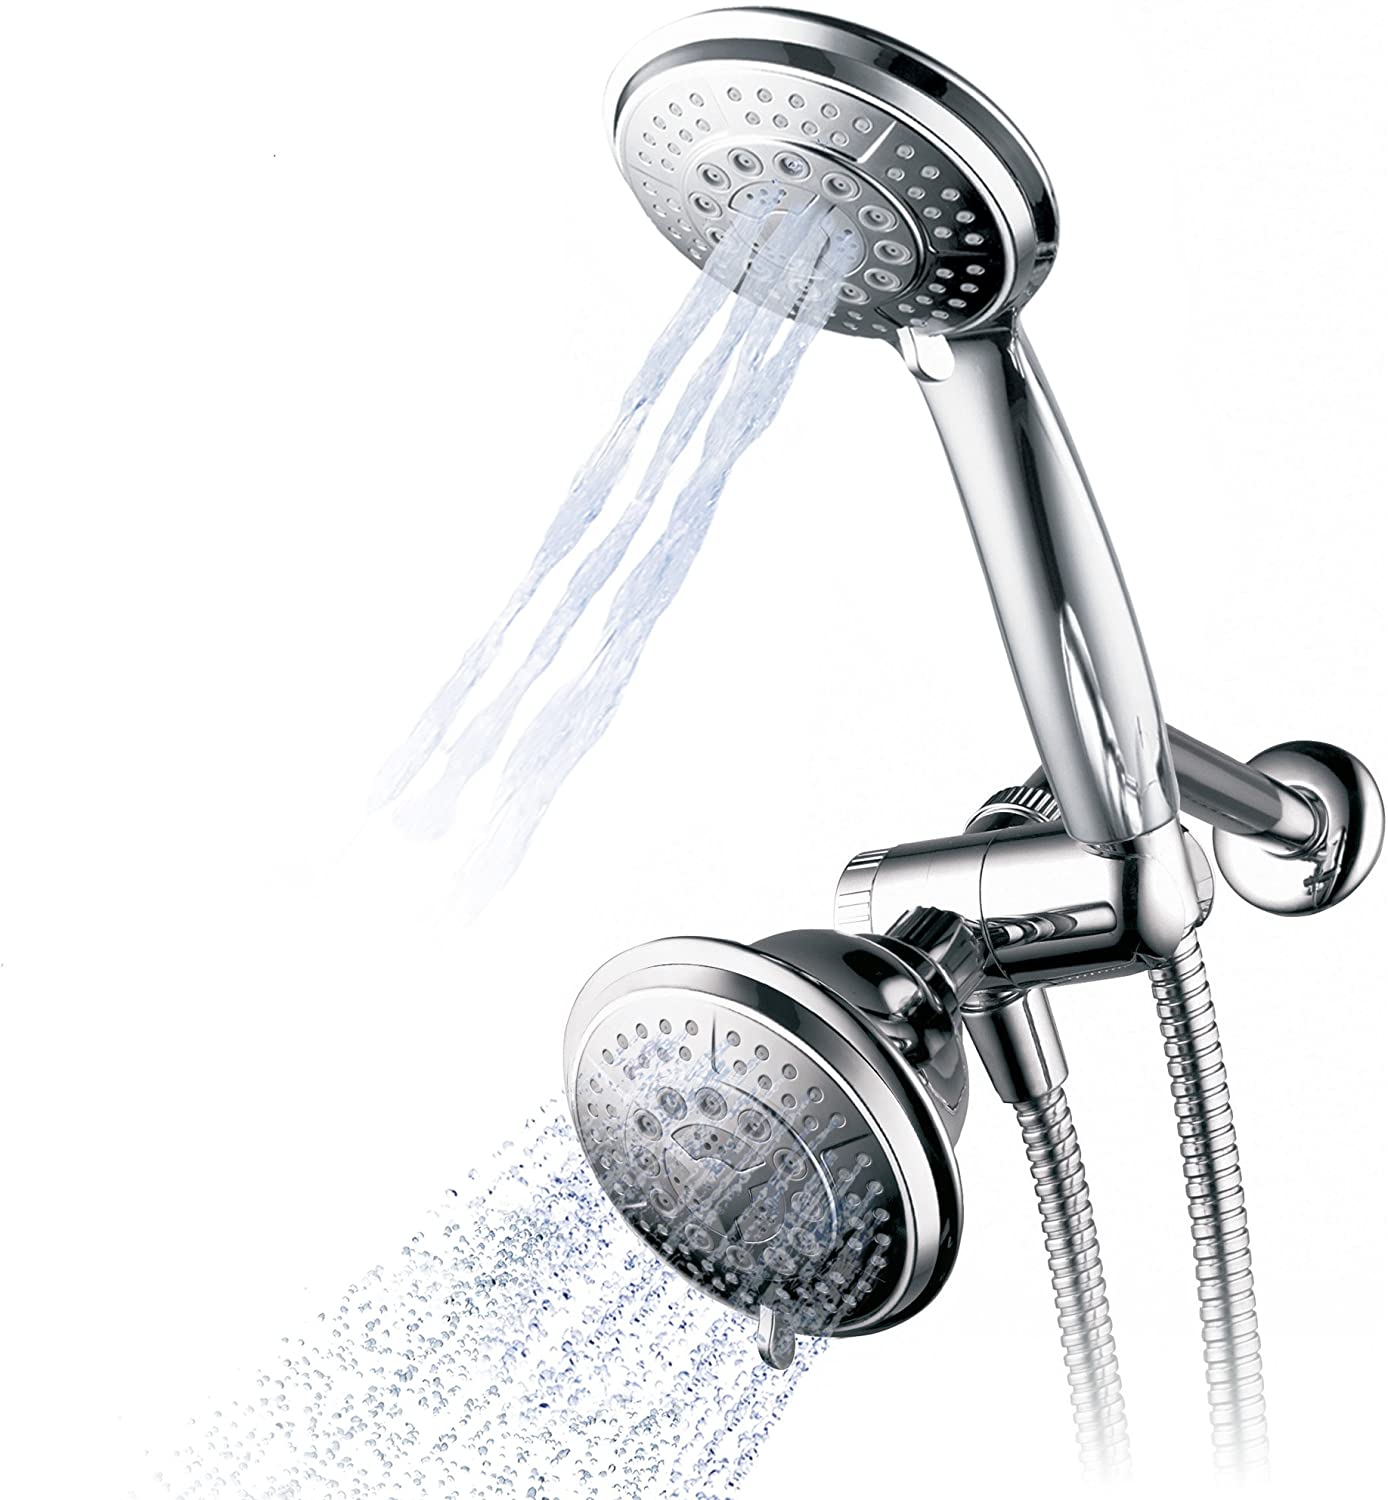 Hydroluxe Handheld Shower Head & Rain Shower Combo